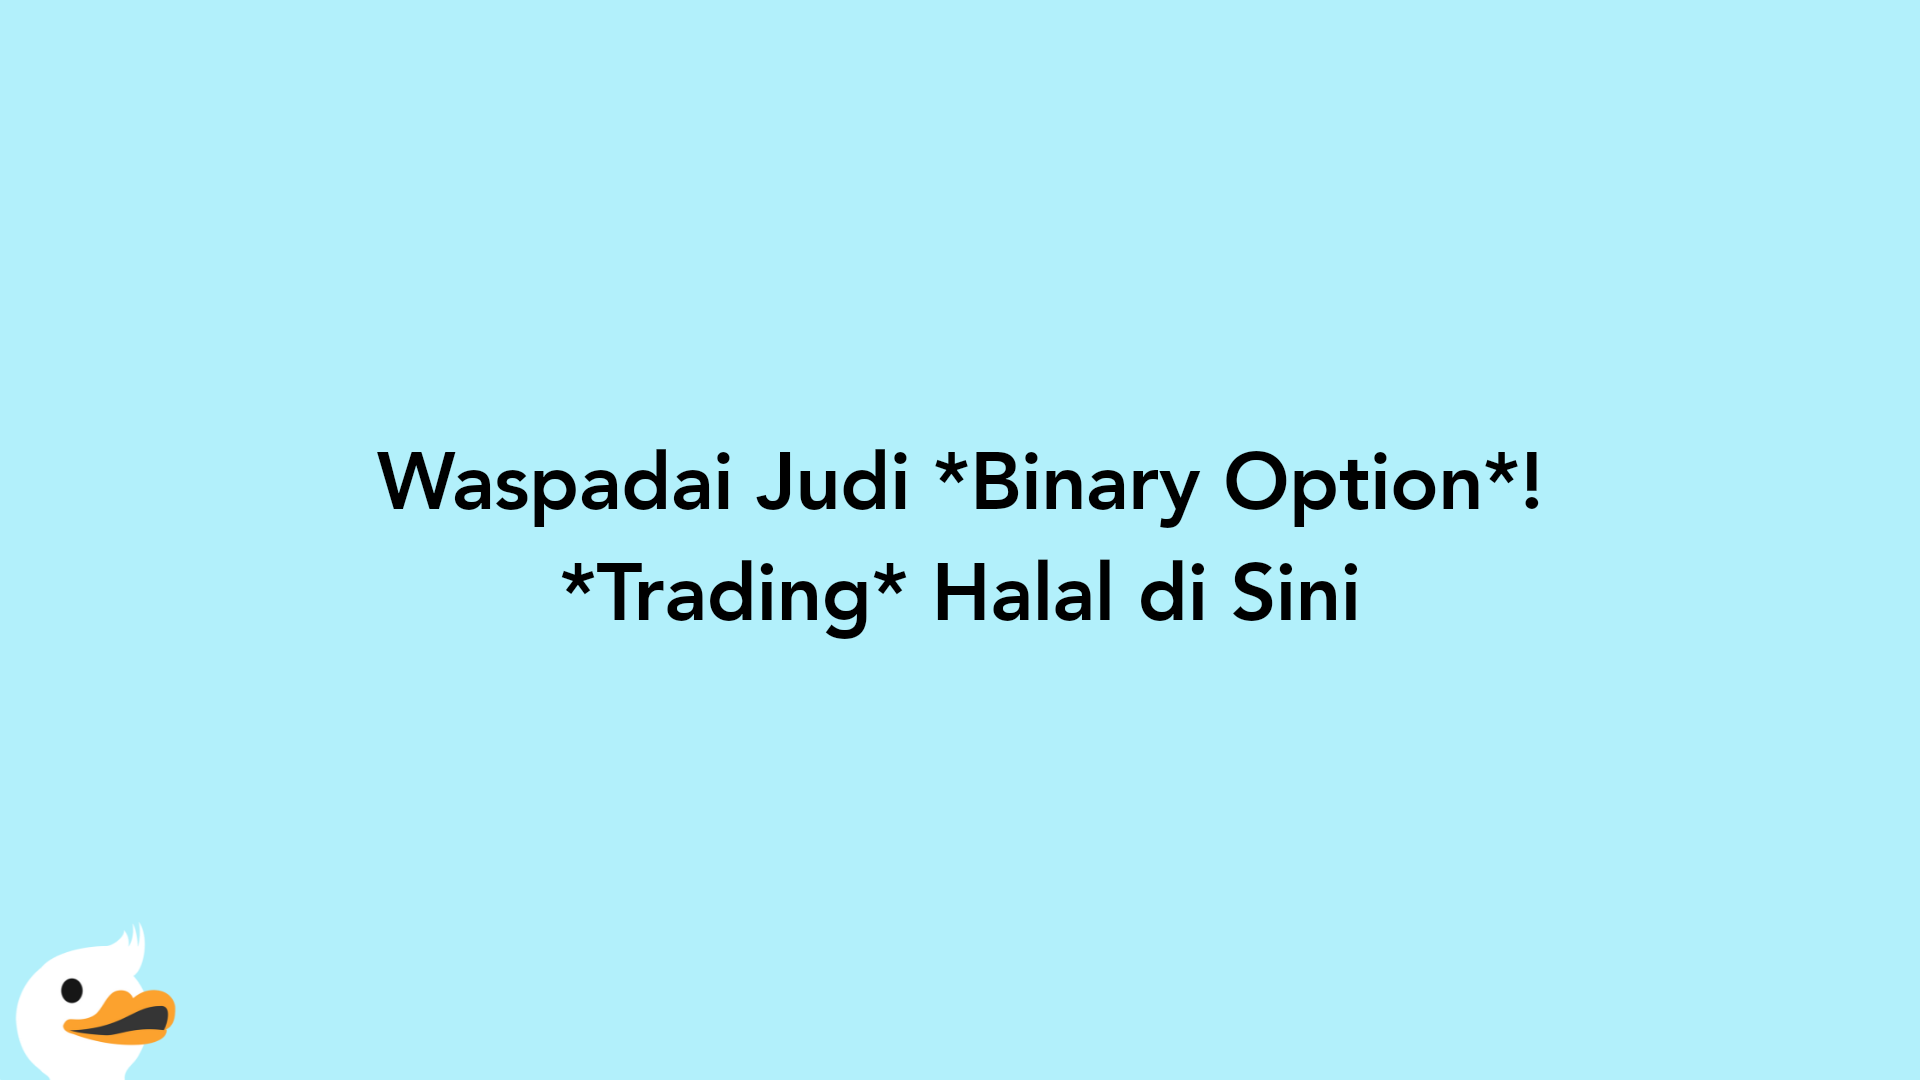 Waspadai Judi Binary Option! Trading Halal di Sini